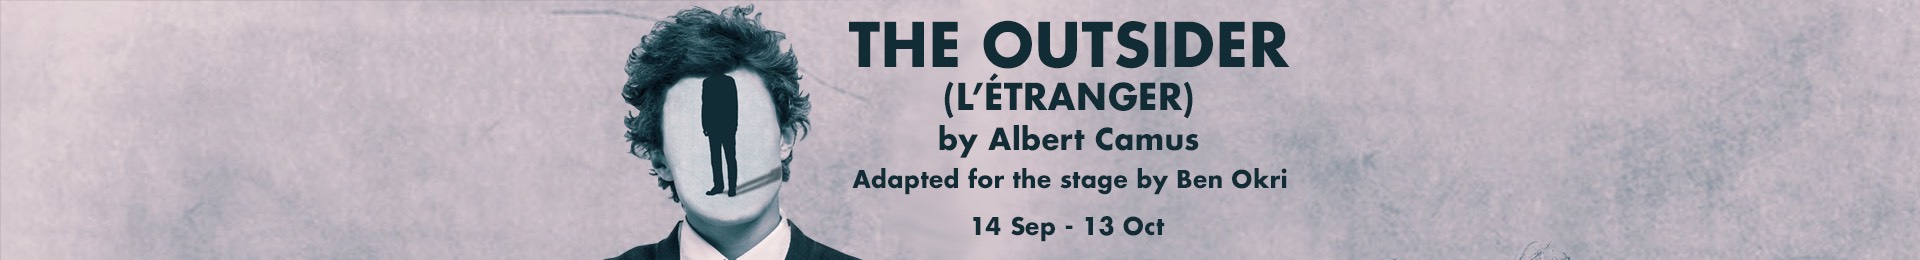 The Outsider (L’Etranger) banner image